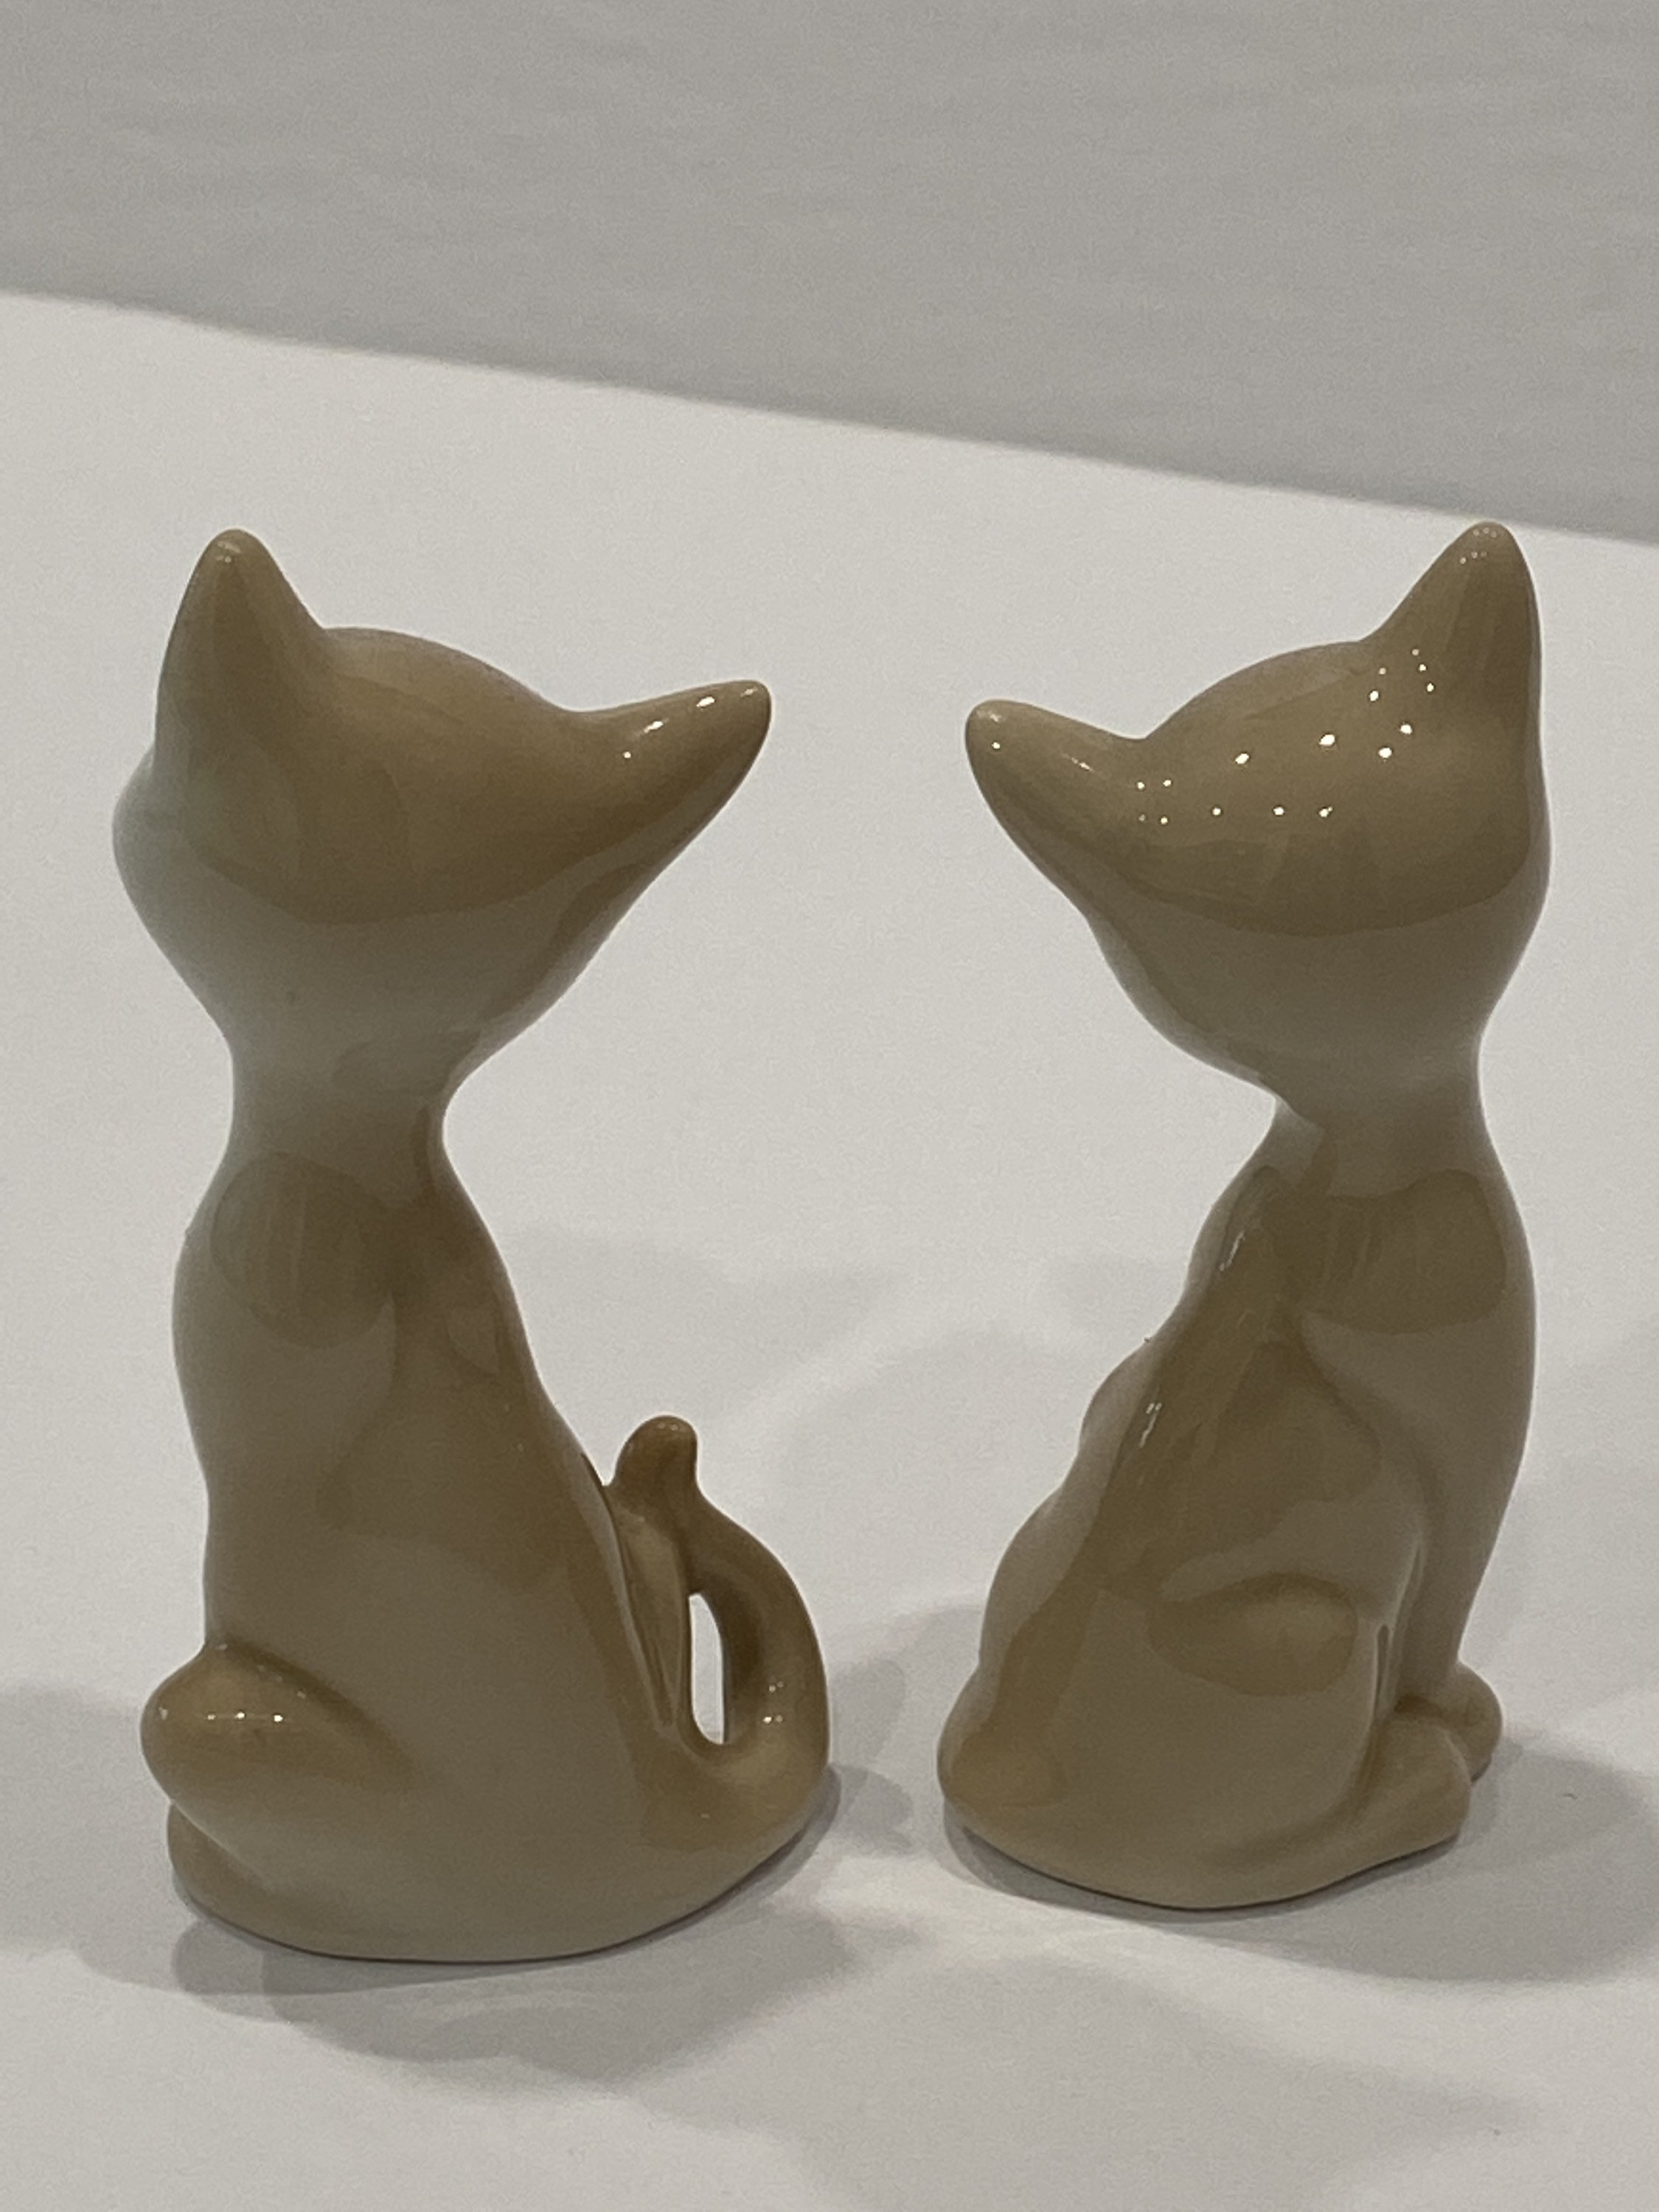 Vintage 70's Era 3 Cat Figurines Feline Porcelain Signed OMC Japan Original Label Estate